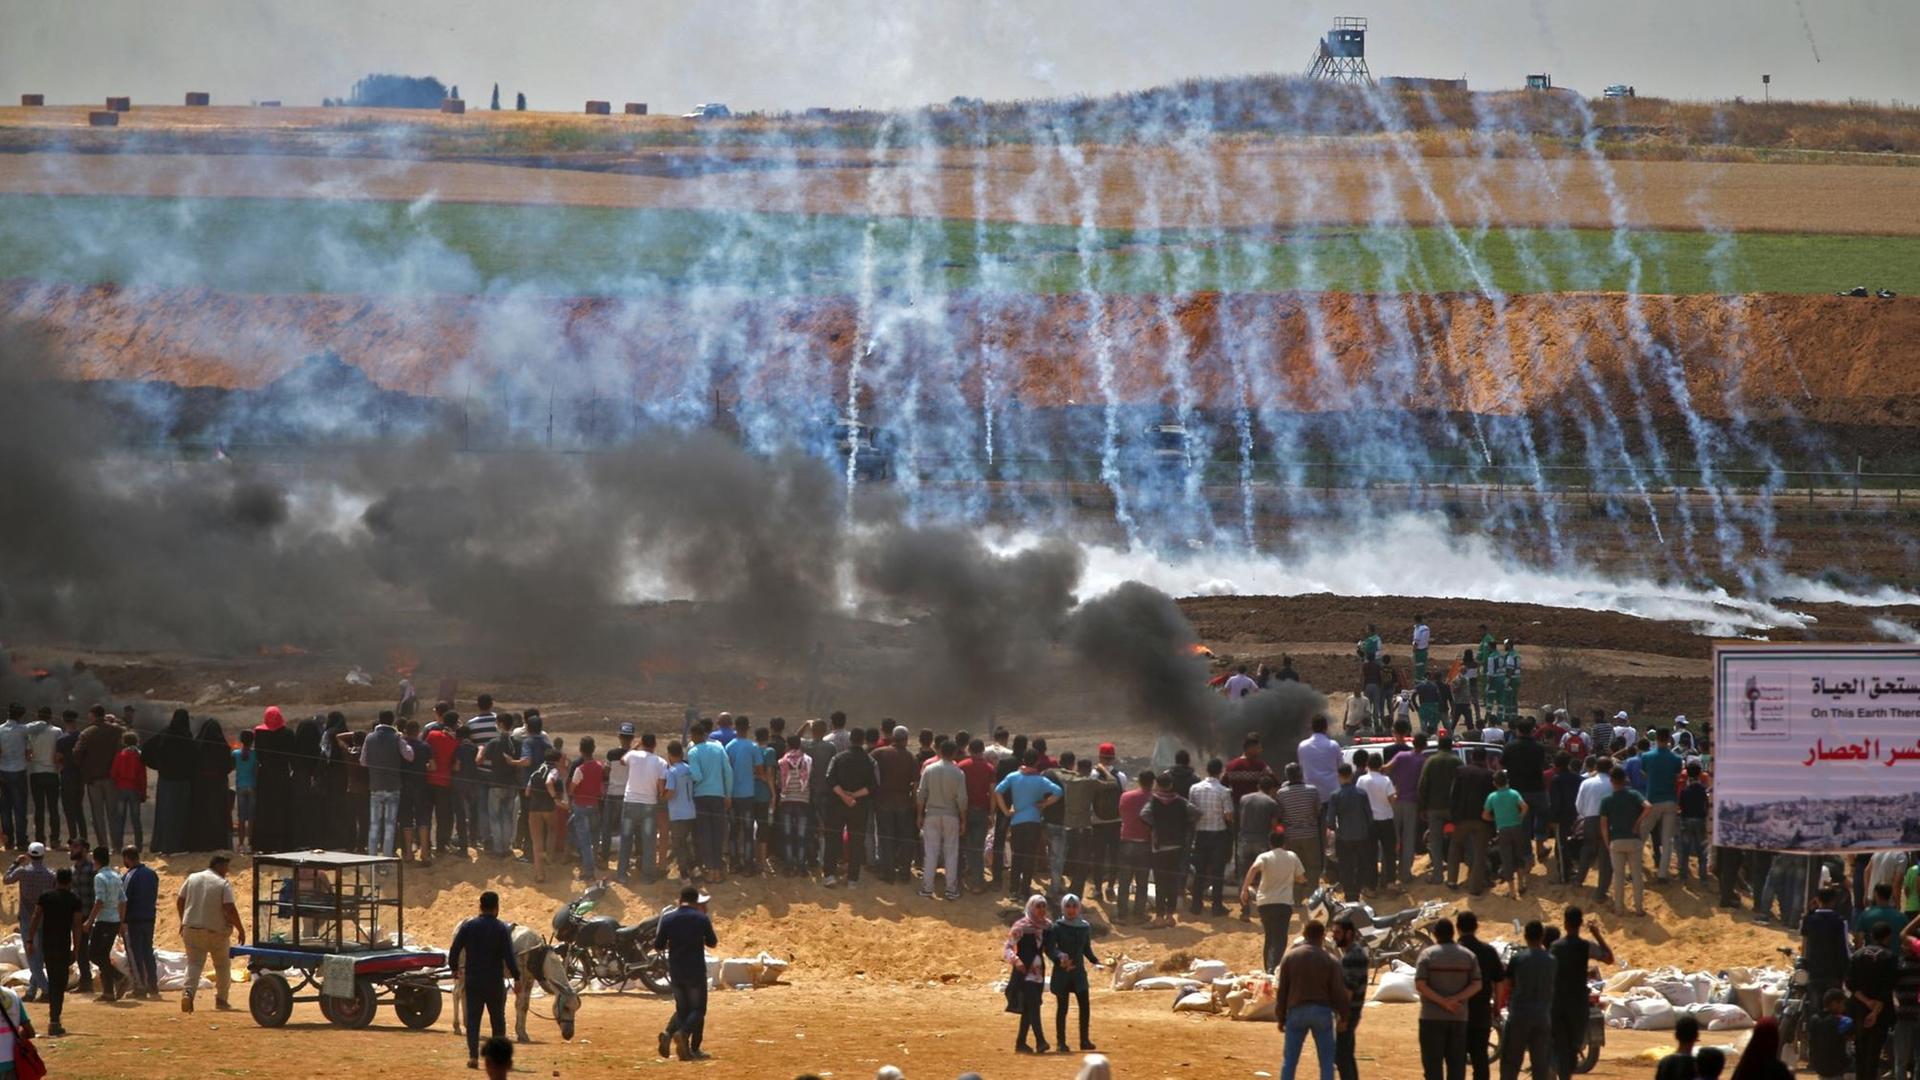 Demonstranten zünden Reifen an, Soldaten schießen mit Tränengas